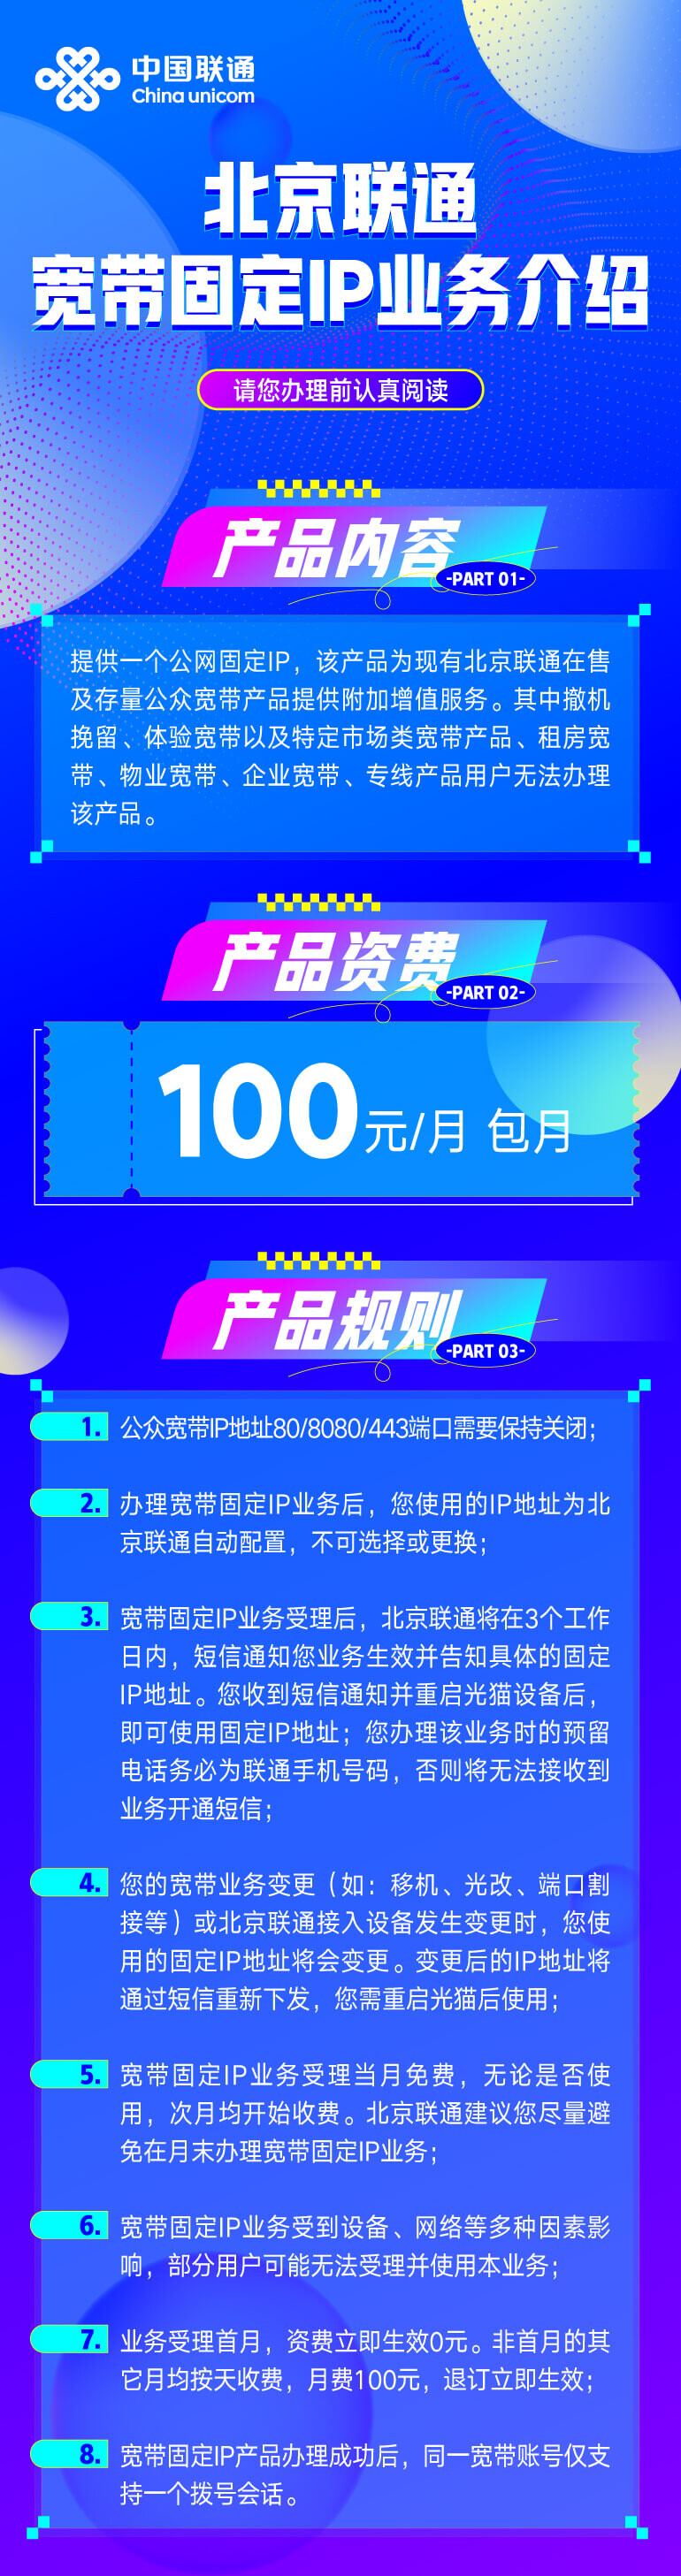 北京联通推出家庭宽带固定公网ip业务 100元/月-图片2